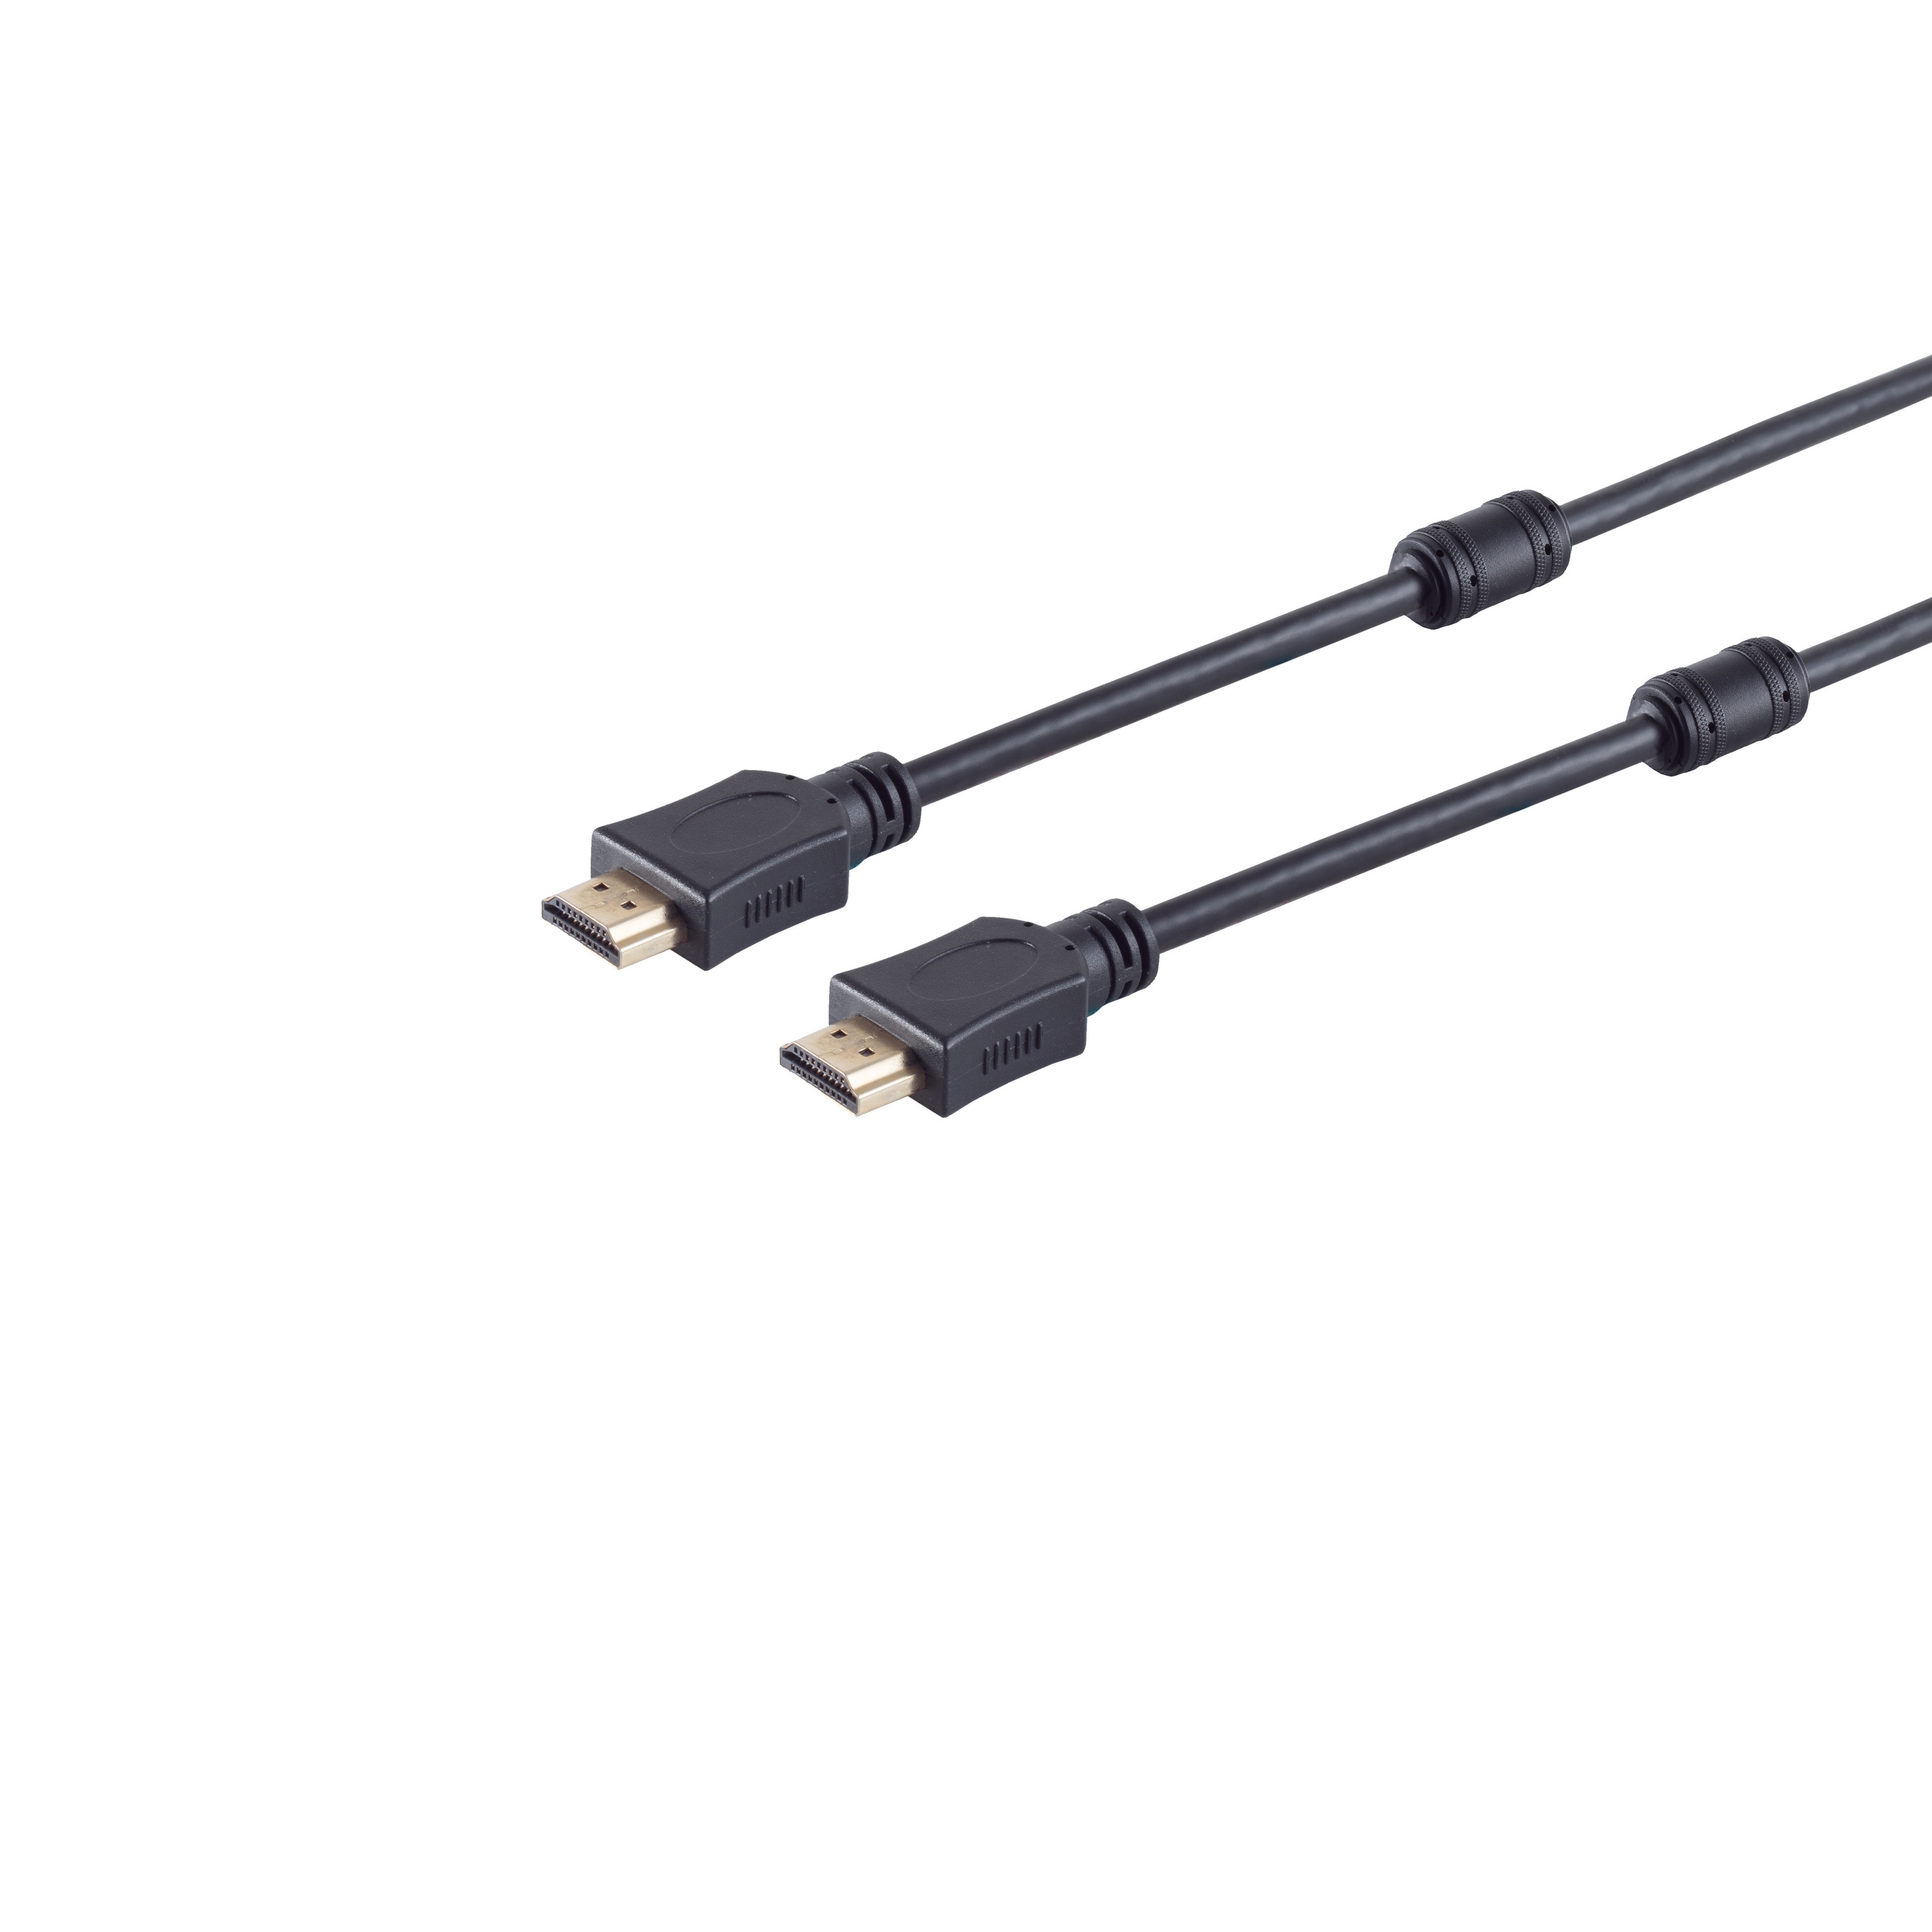 A-Stecker HDMI verg Ferrit CONNECTIVITY HEAC S/CONN Kabel 3m A-Stecker/HDMI MAXIMUM HDMI